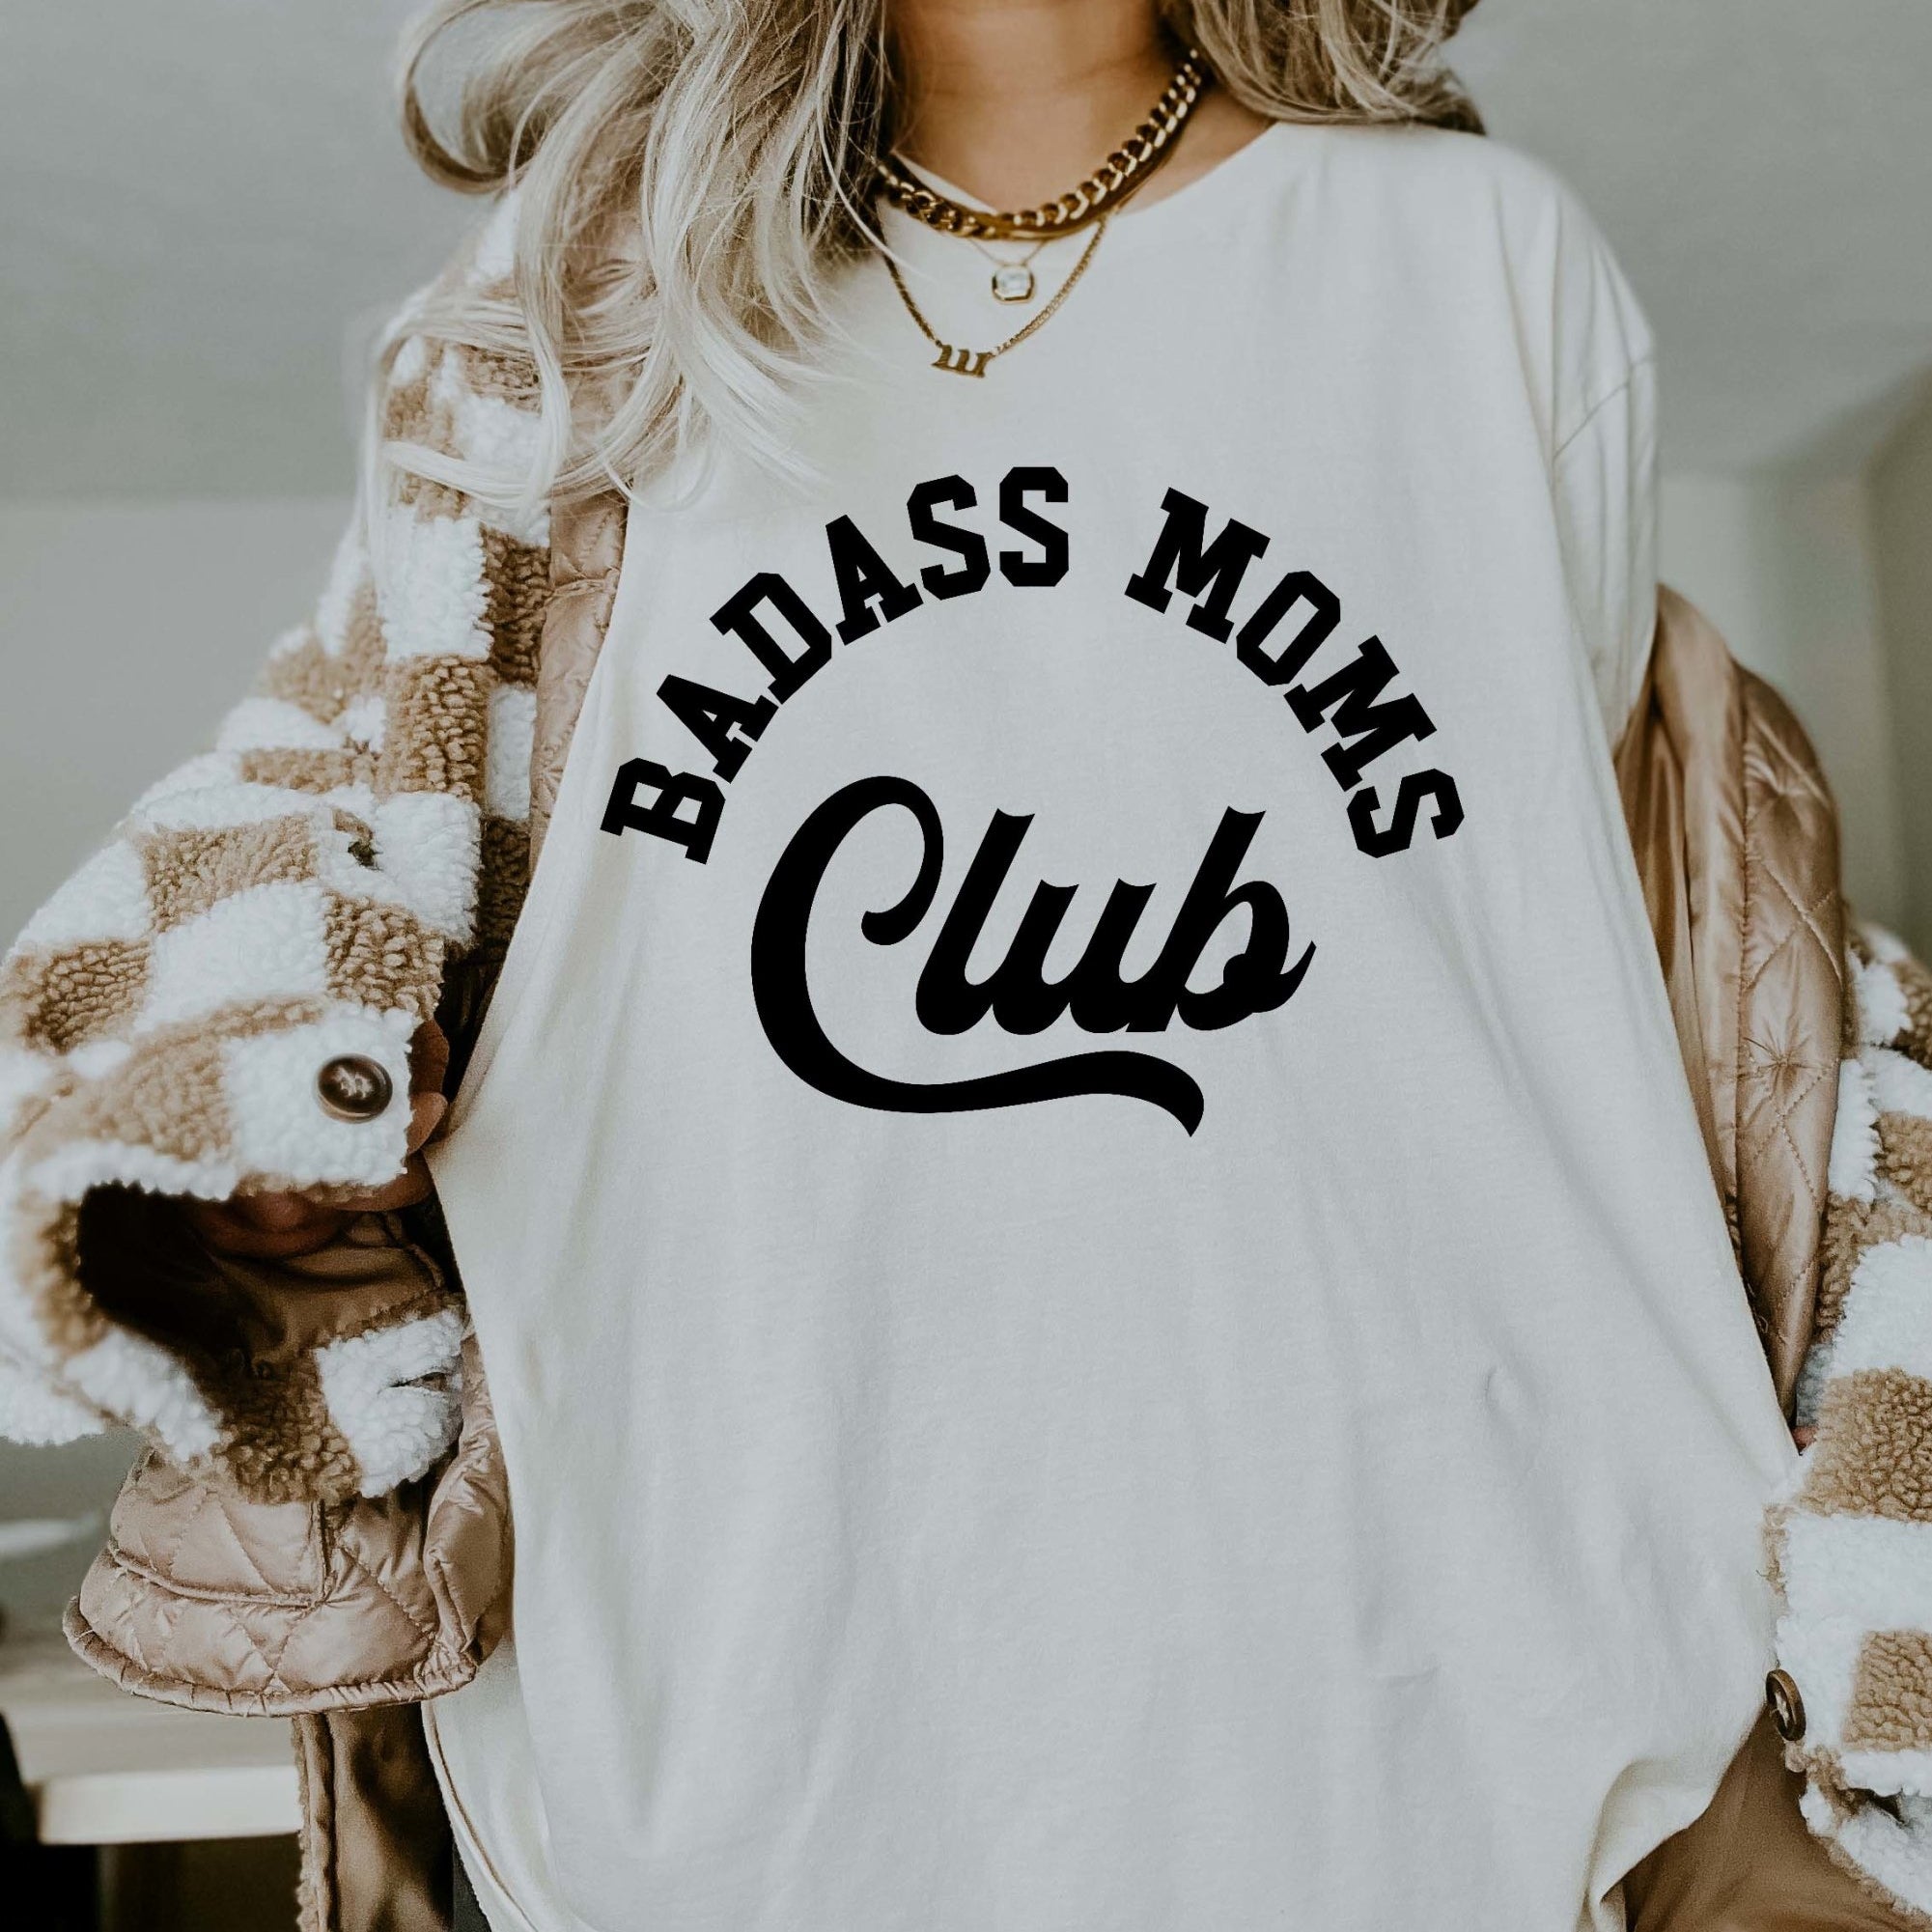 Badass Moms Club Tee - UntamedEgo LLC.